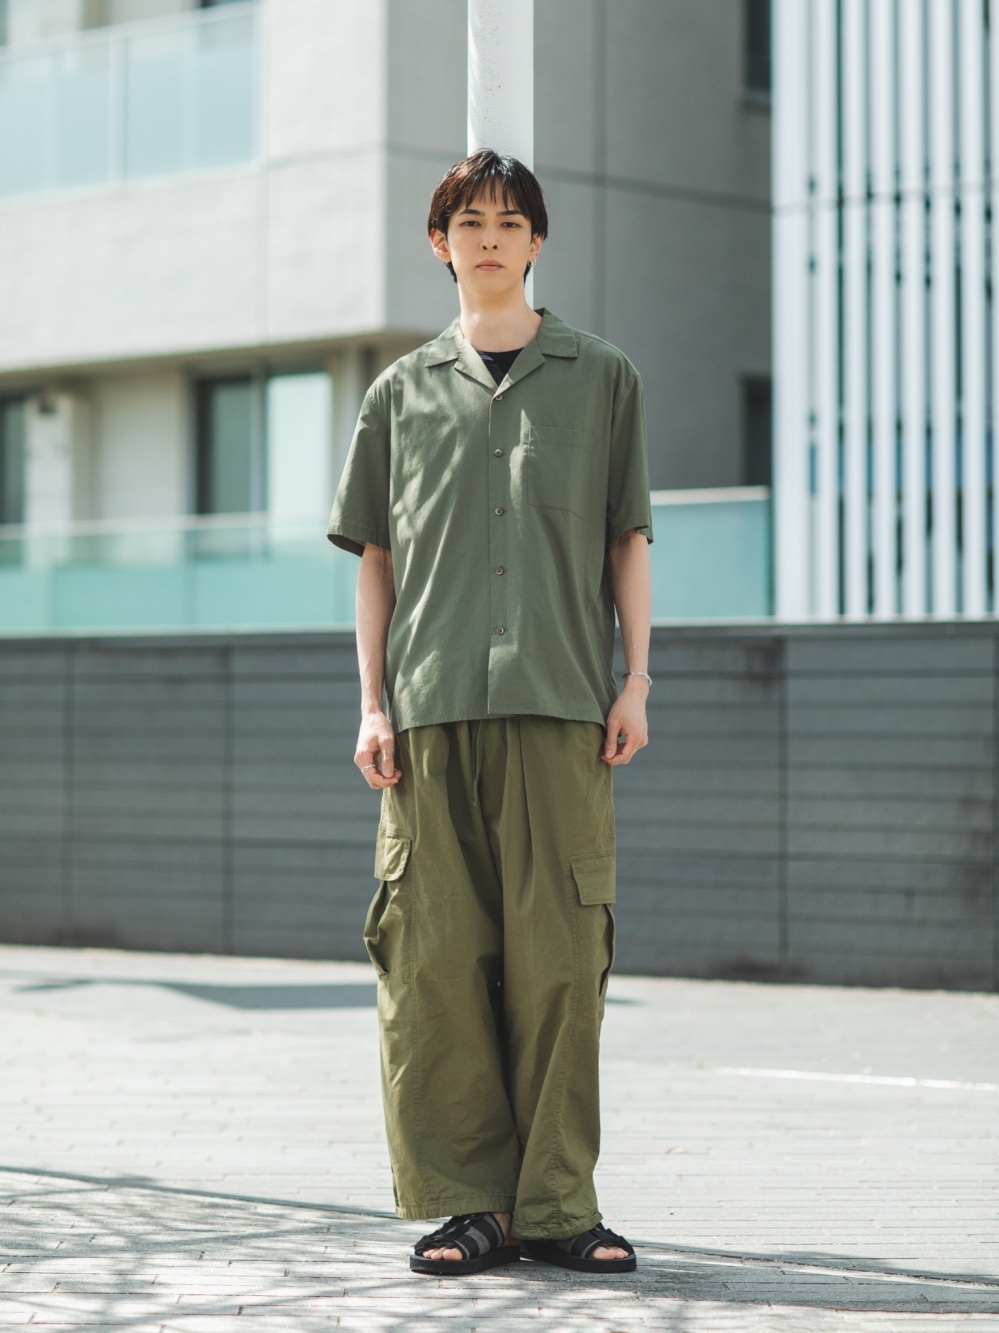 ドライEXクルーネックTシャツプリント（Rei Nakanishiコラボレーション）、オープンカラーシャツ」の着用コーディネート| ユニクロ公式